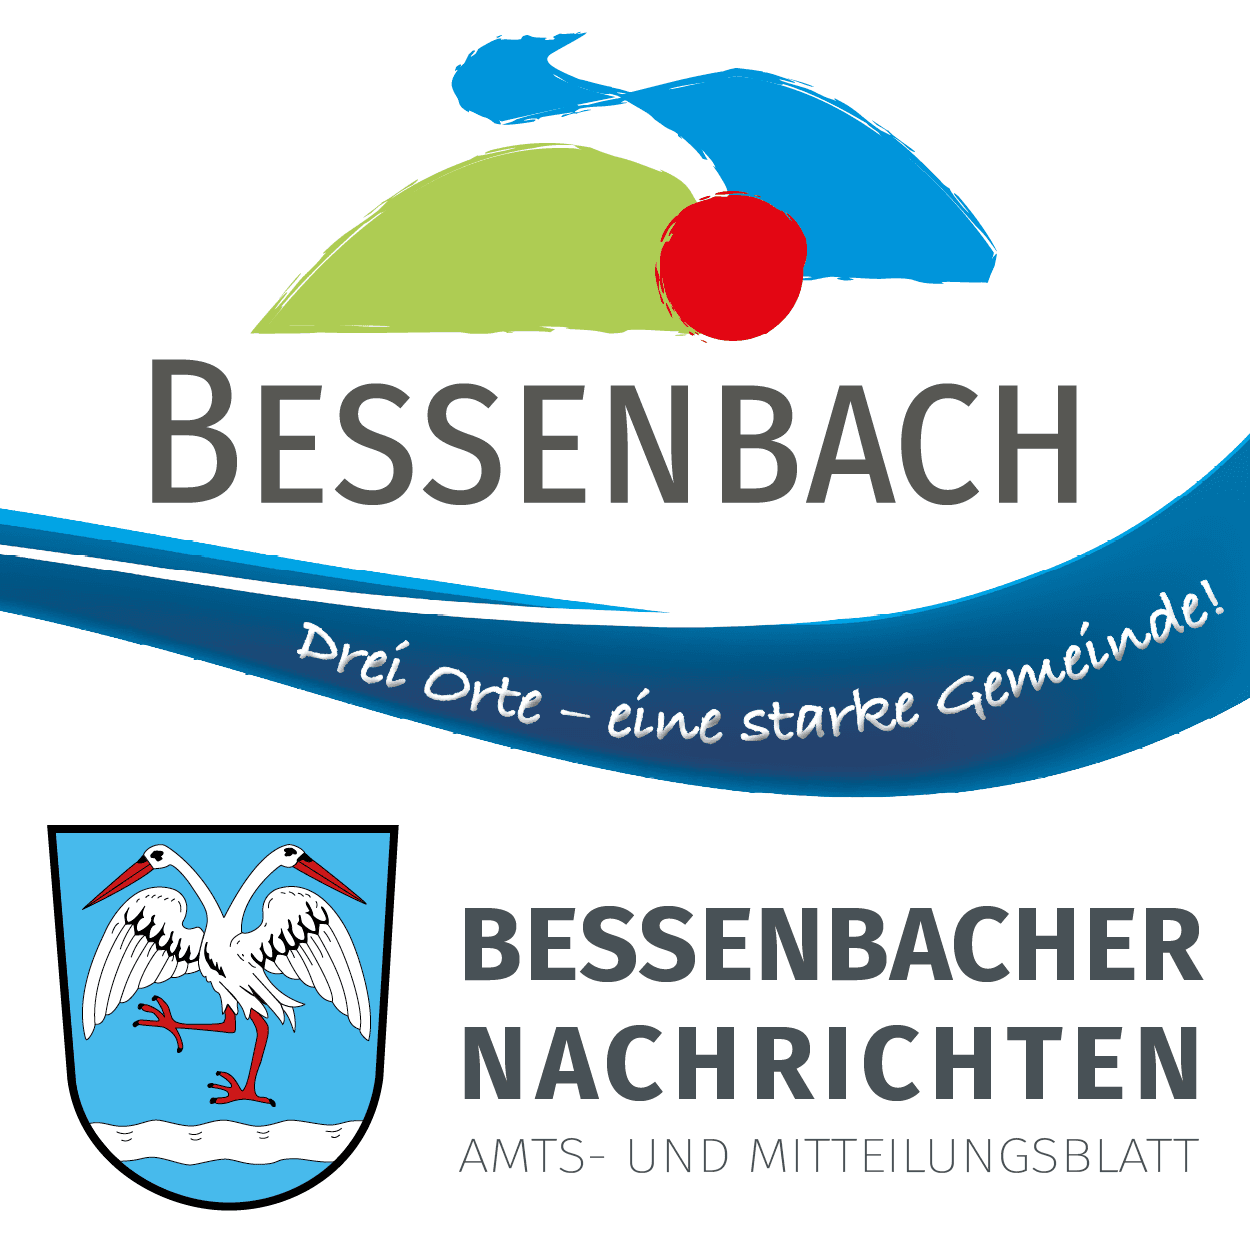 Bessenbach